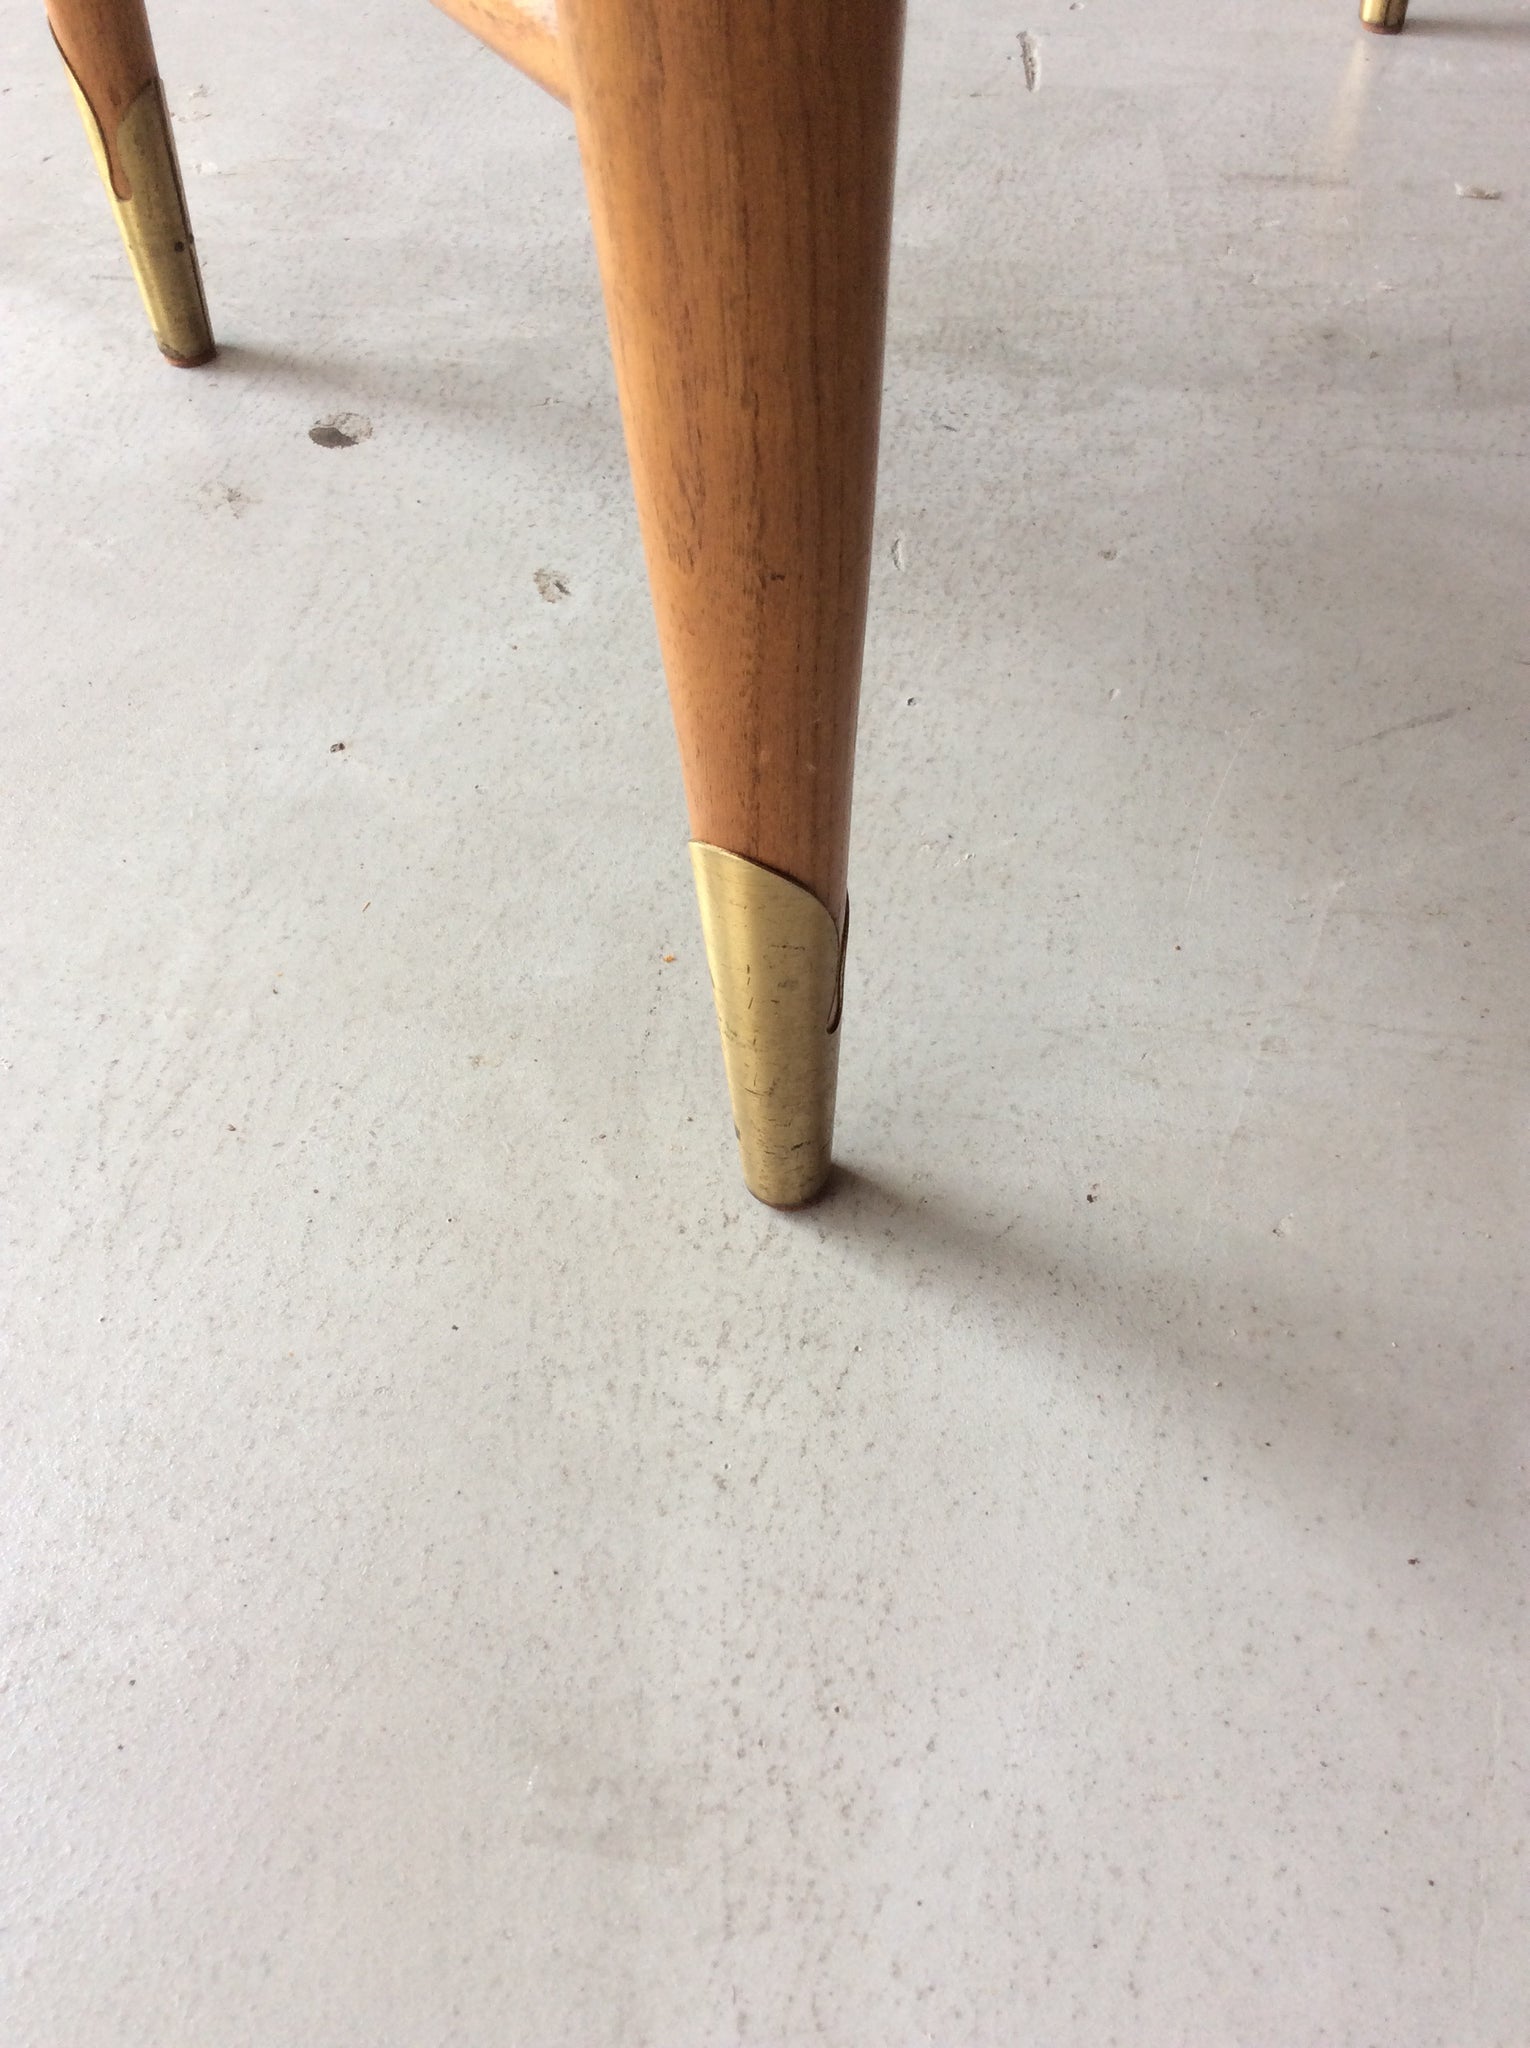 レーン コペンハーゲン サイドテーブル / lane altavista copenhagen side step end table with brass legs #0106